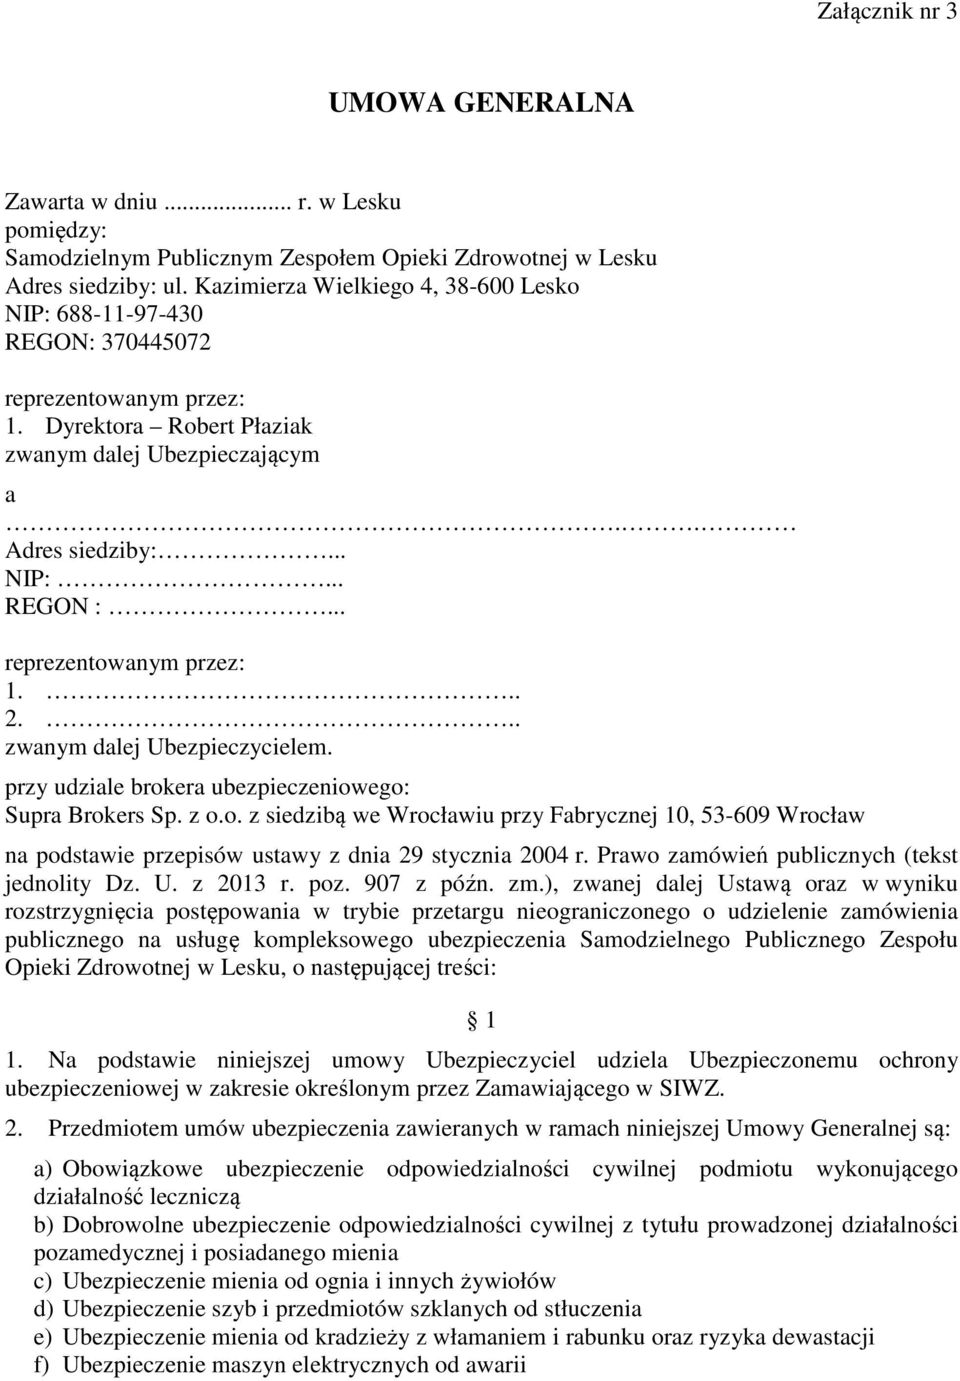 .. reprezentowanym przez: 1... 2... zwanym dalej Ubezpieczycielem. przy udziale brokera ubezpieczeniowego: Supra Brokers Sp. z o.o. z siedzibą we Wrocławiu przy Fabrycznej 10, 53-609 Wrocław na podstawie przepisów ustawy z dnia 29 stycznia 2004 r.